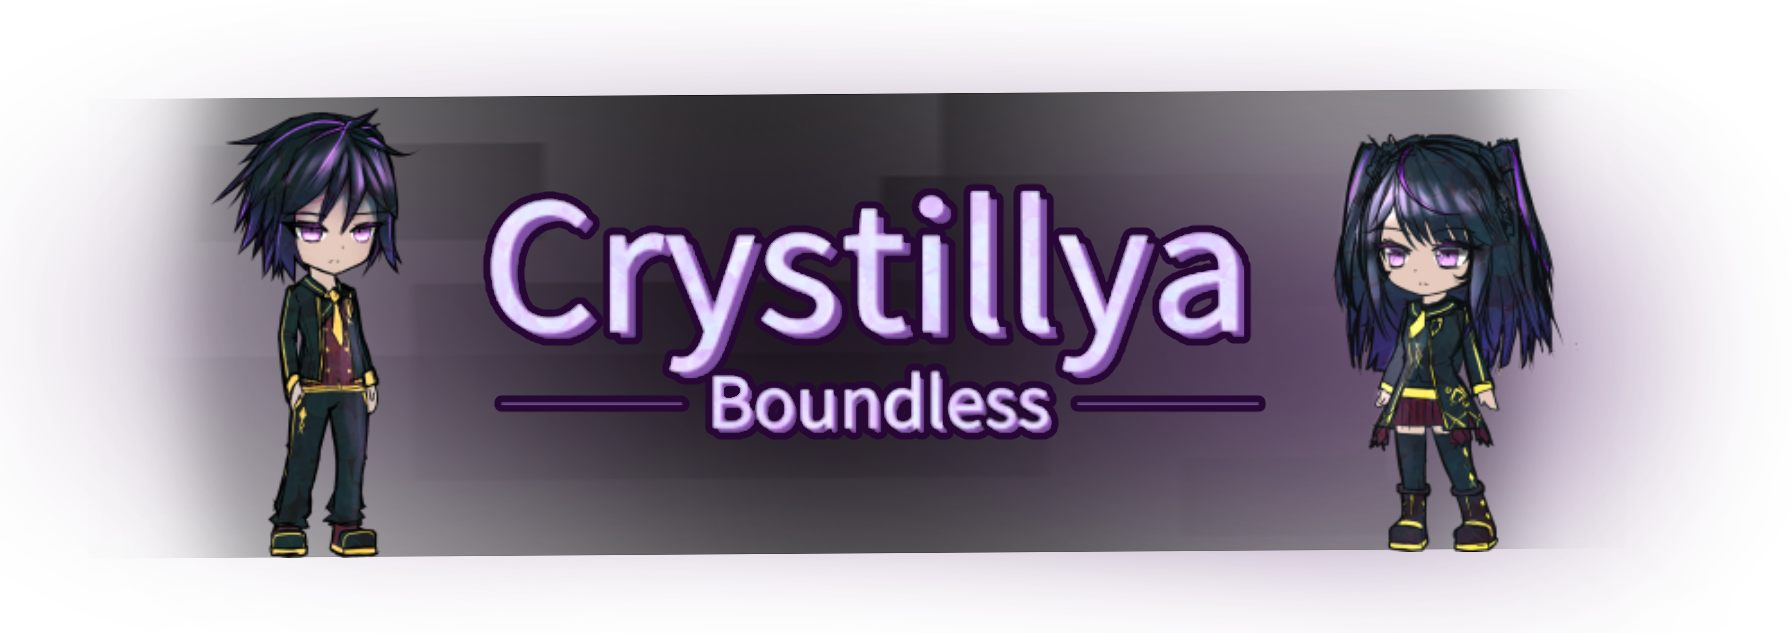 Crystillya - Boundless [Brackeys Jam 2020.1]